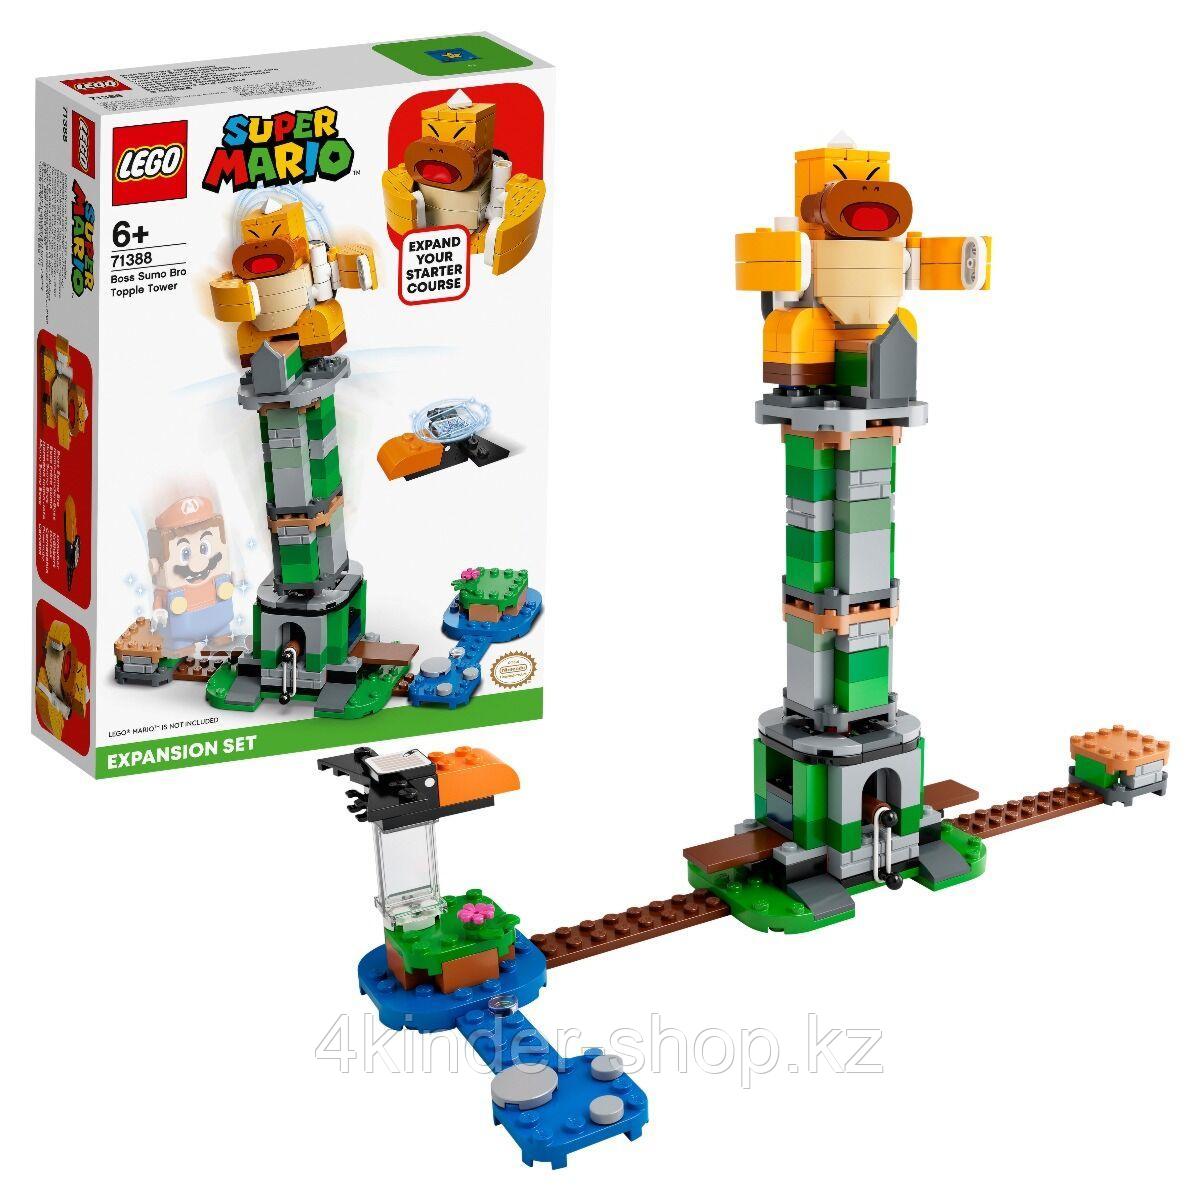 Лего дополнительный набор «Падающая башня босса братца-сумо» Super Mario 71388